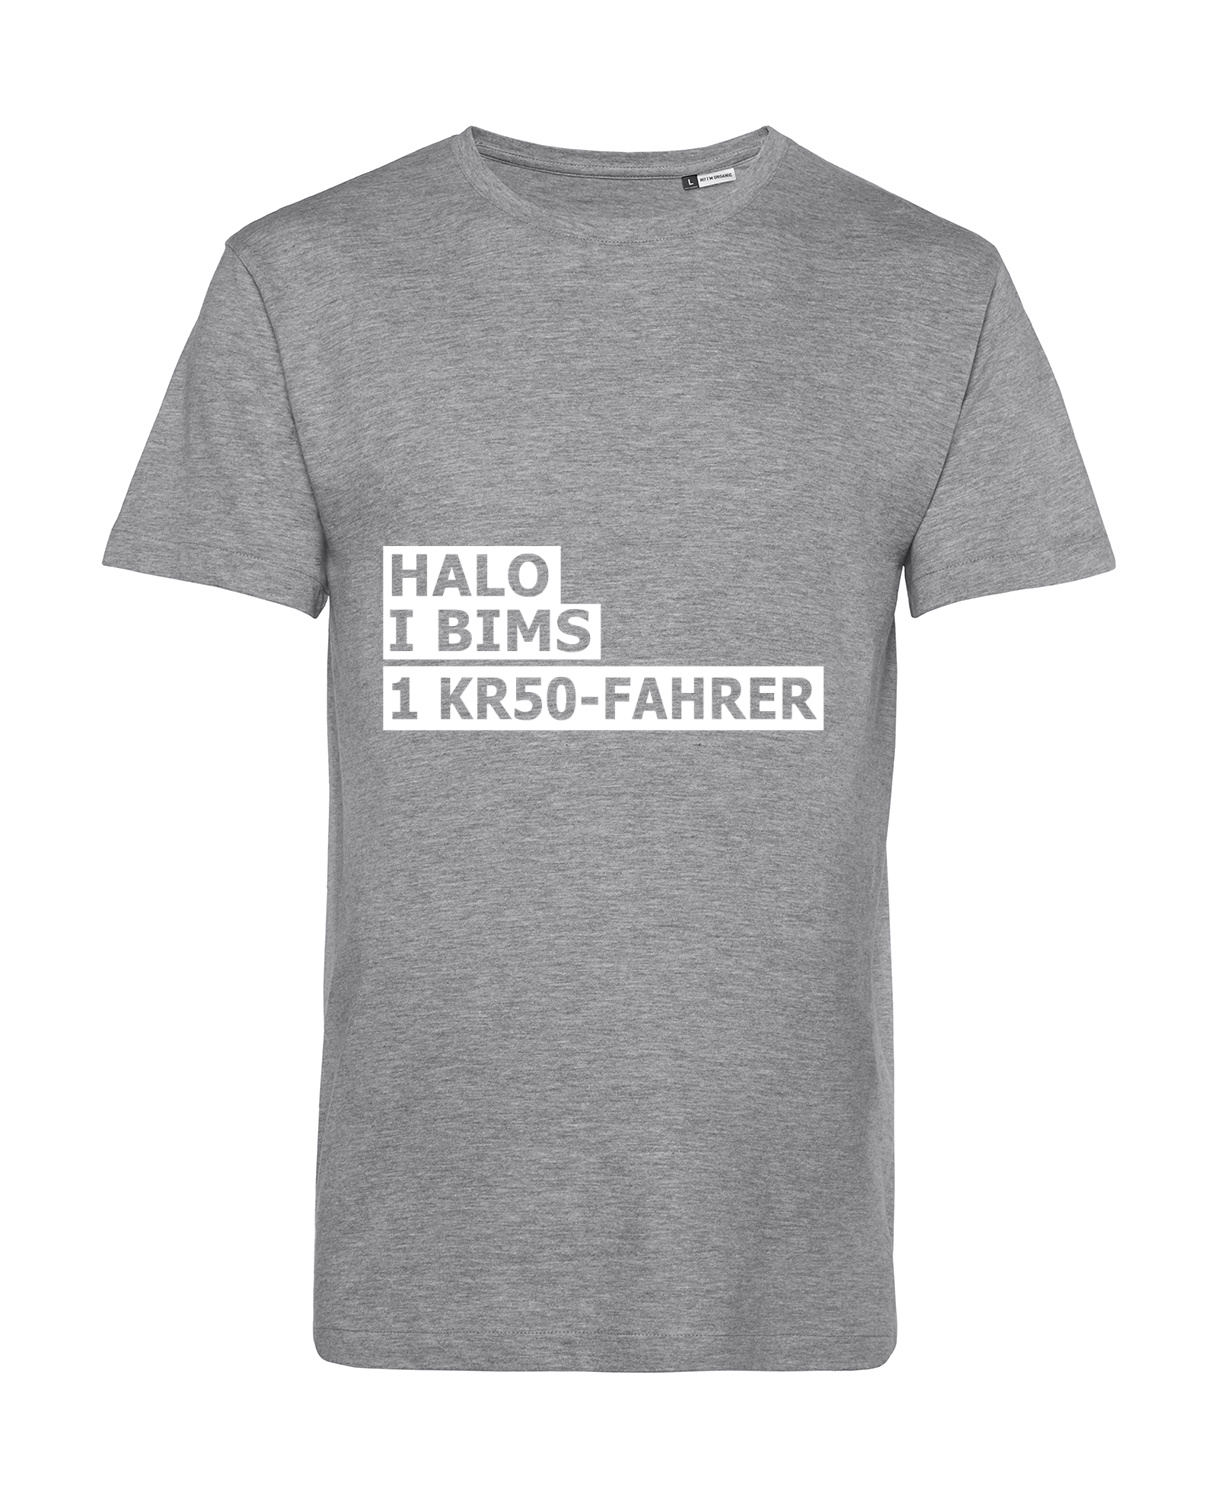 Nachhaltiges T-Shirt Herren 2Takter - Halo I bims 1 KR50-Fahrer